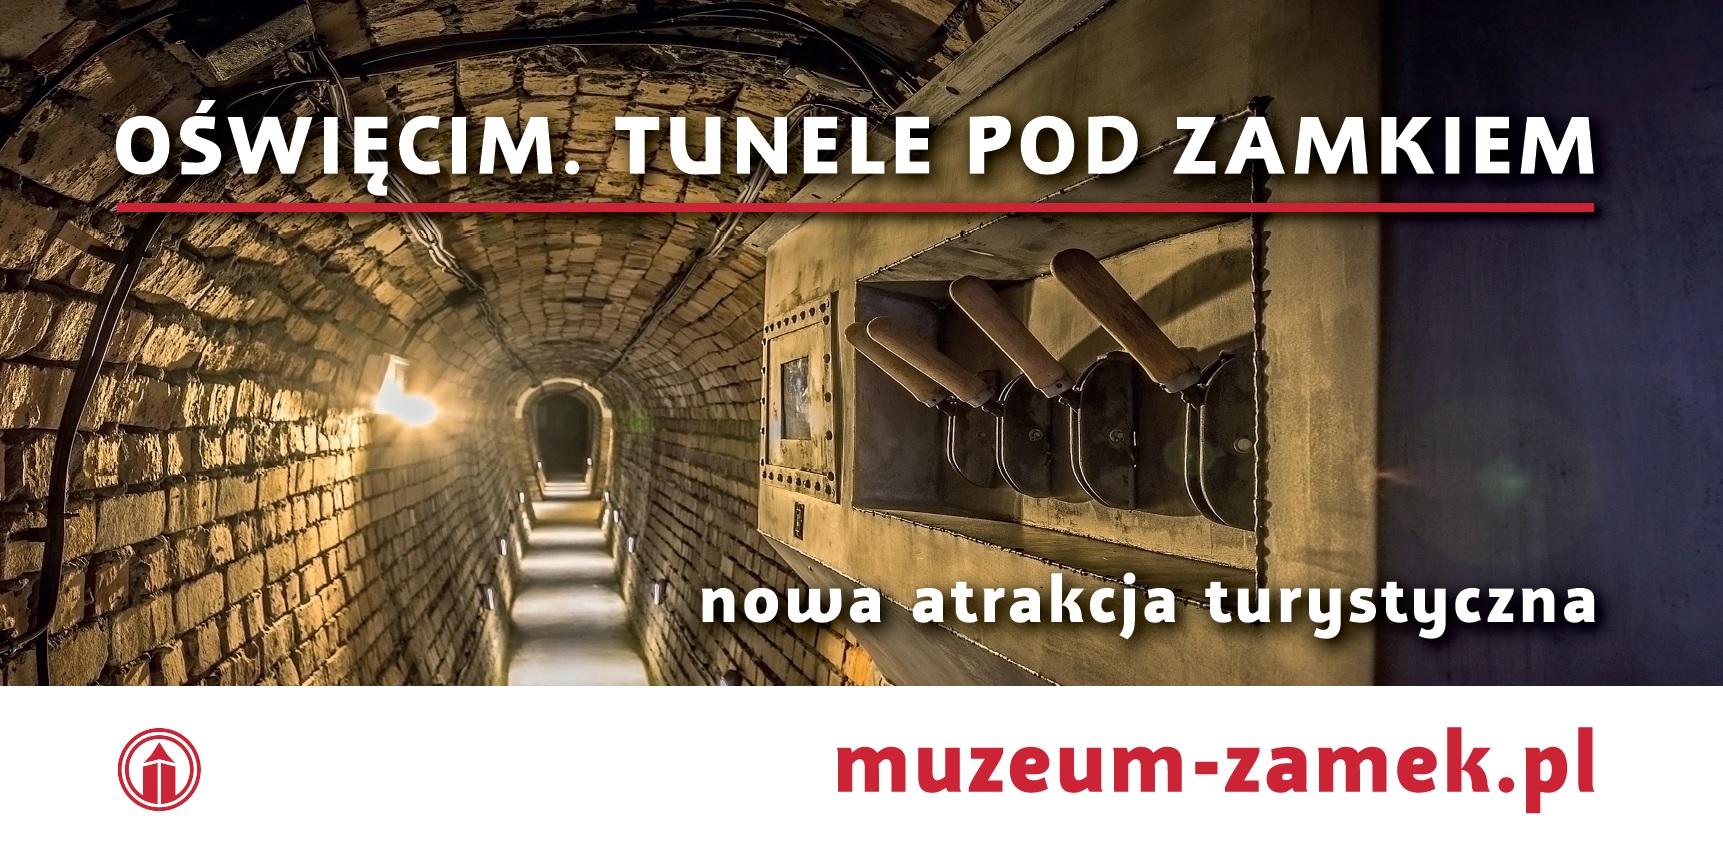 Oswiecim-tunele-turystyka-bilbord-zamek-muzeum zrodlo-oswiecim pl, info oswiecim .jpg